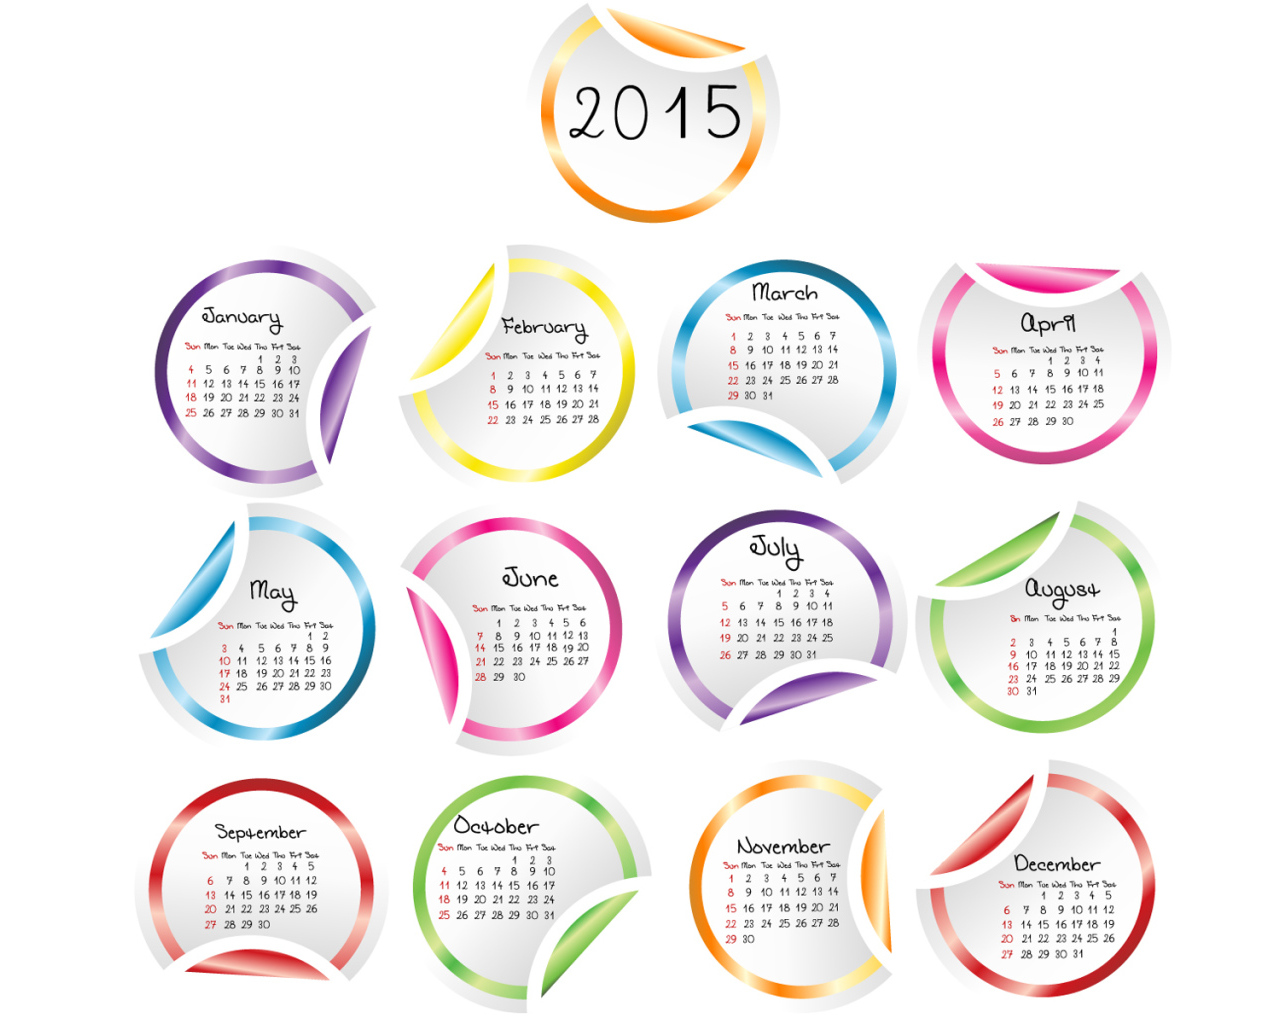 Календарь на Новый Год 2015